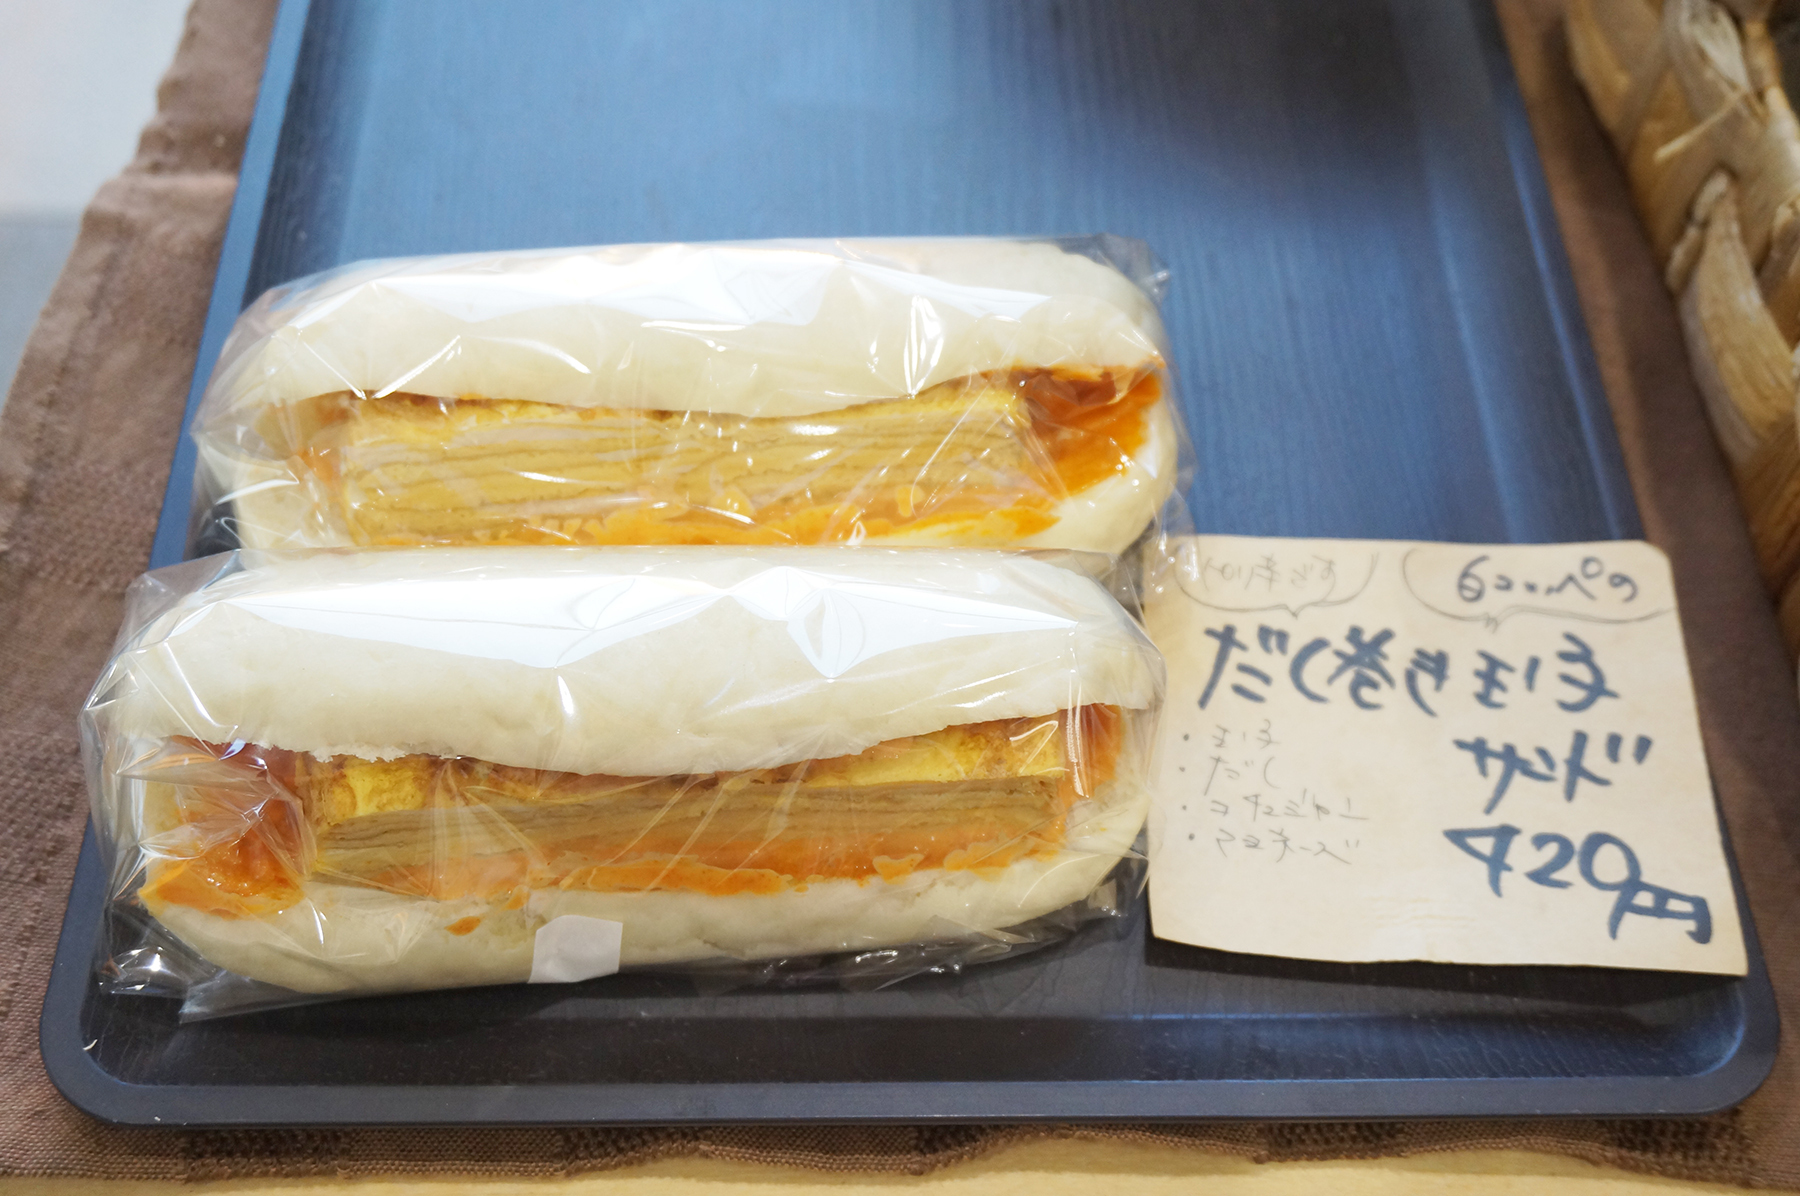 だし巻き玉子サンド(420円)